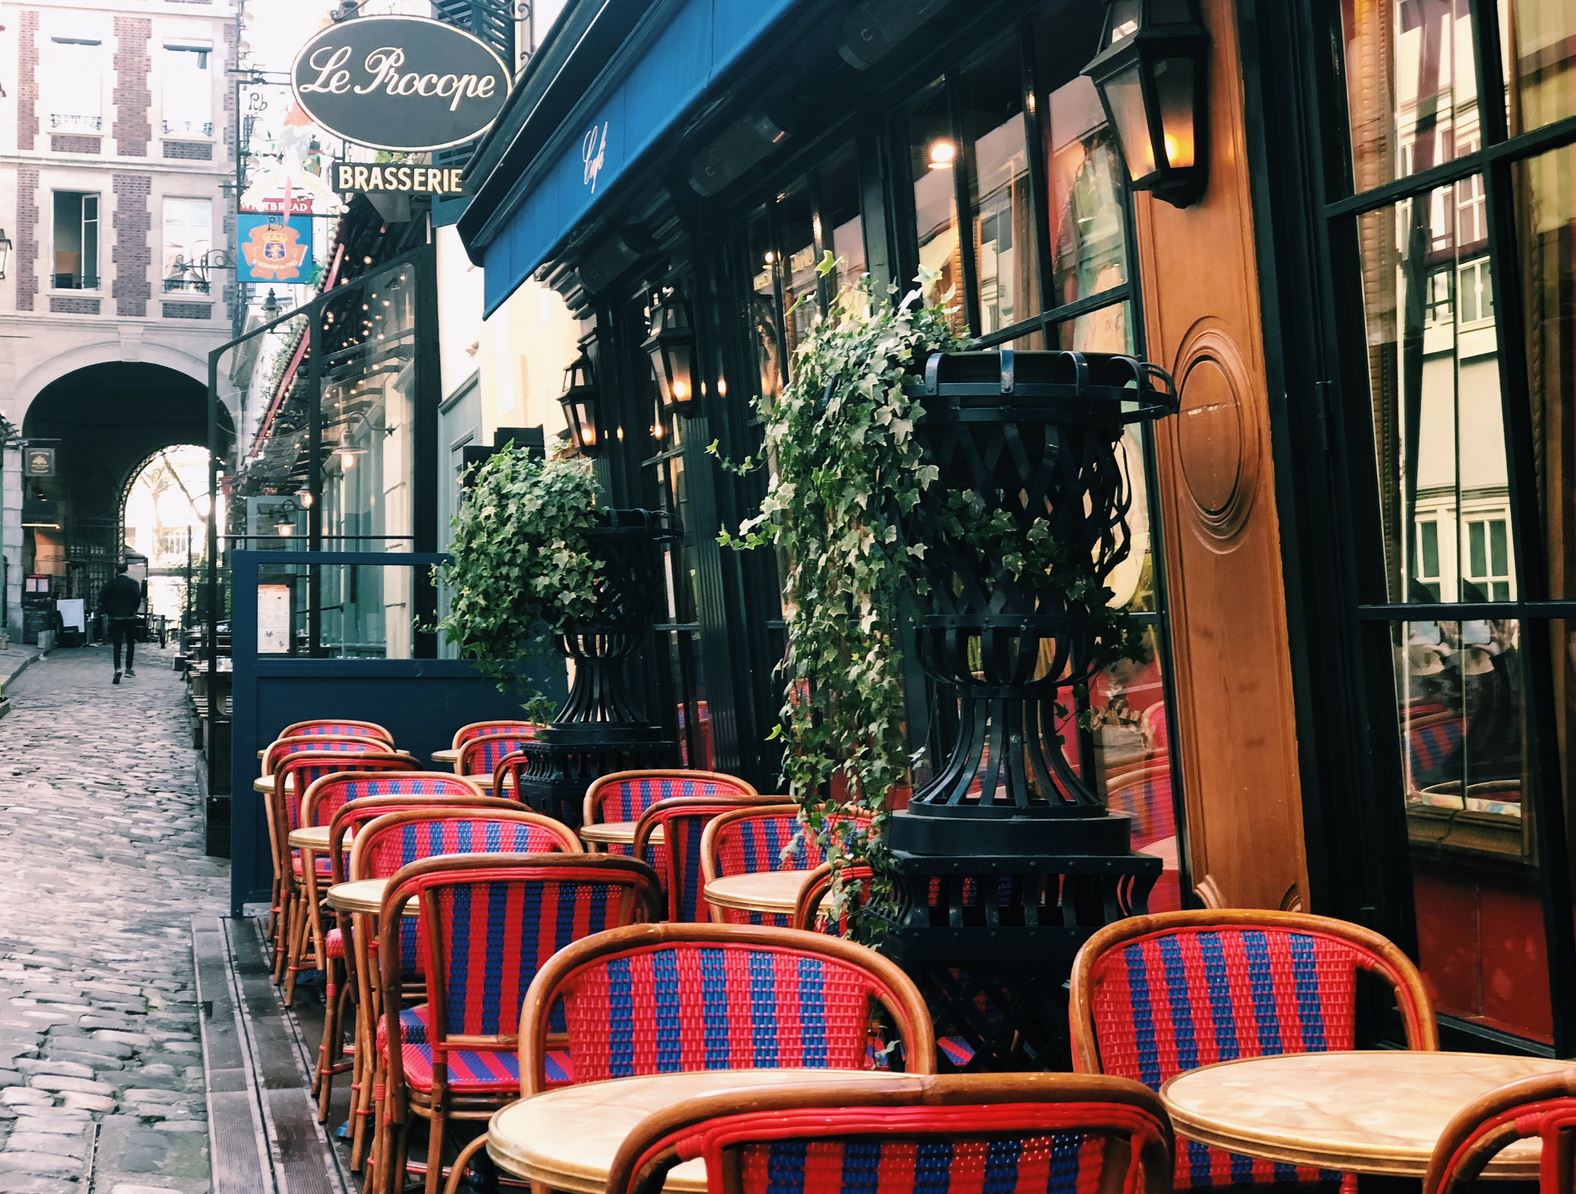 Le Procope, the oldest café in Paris